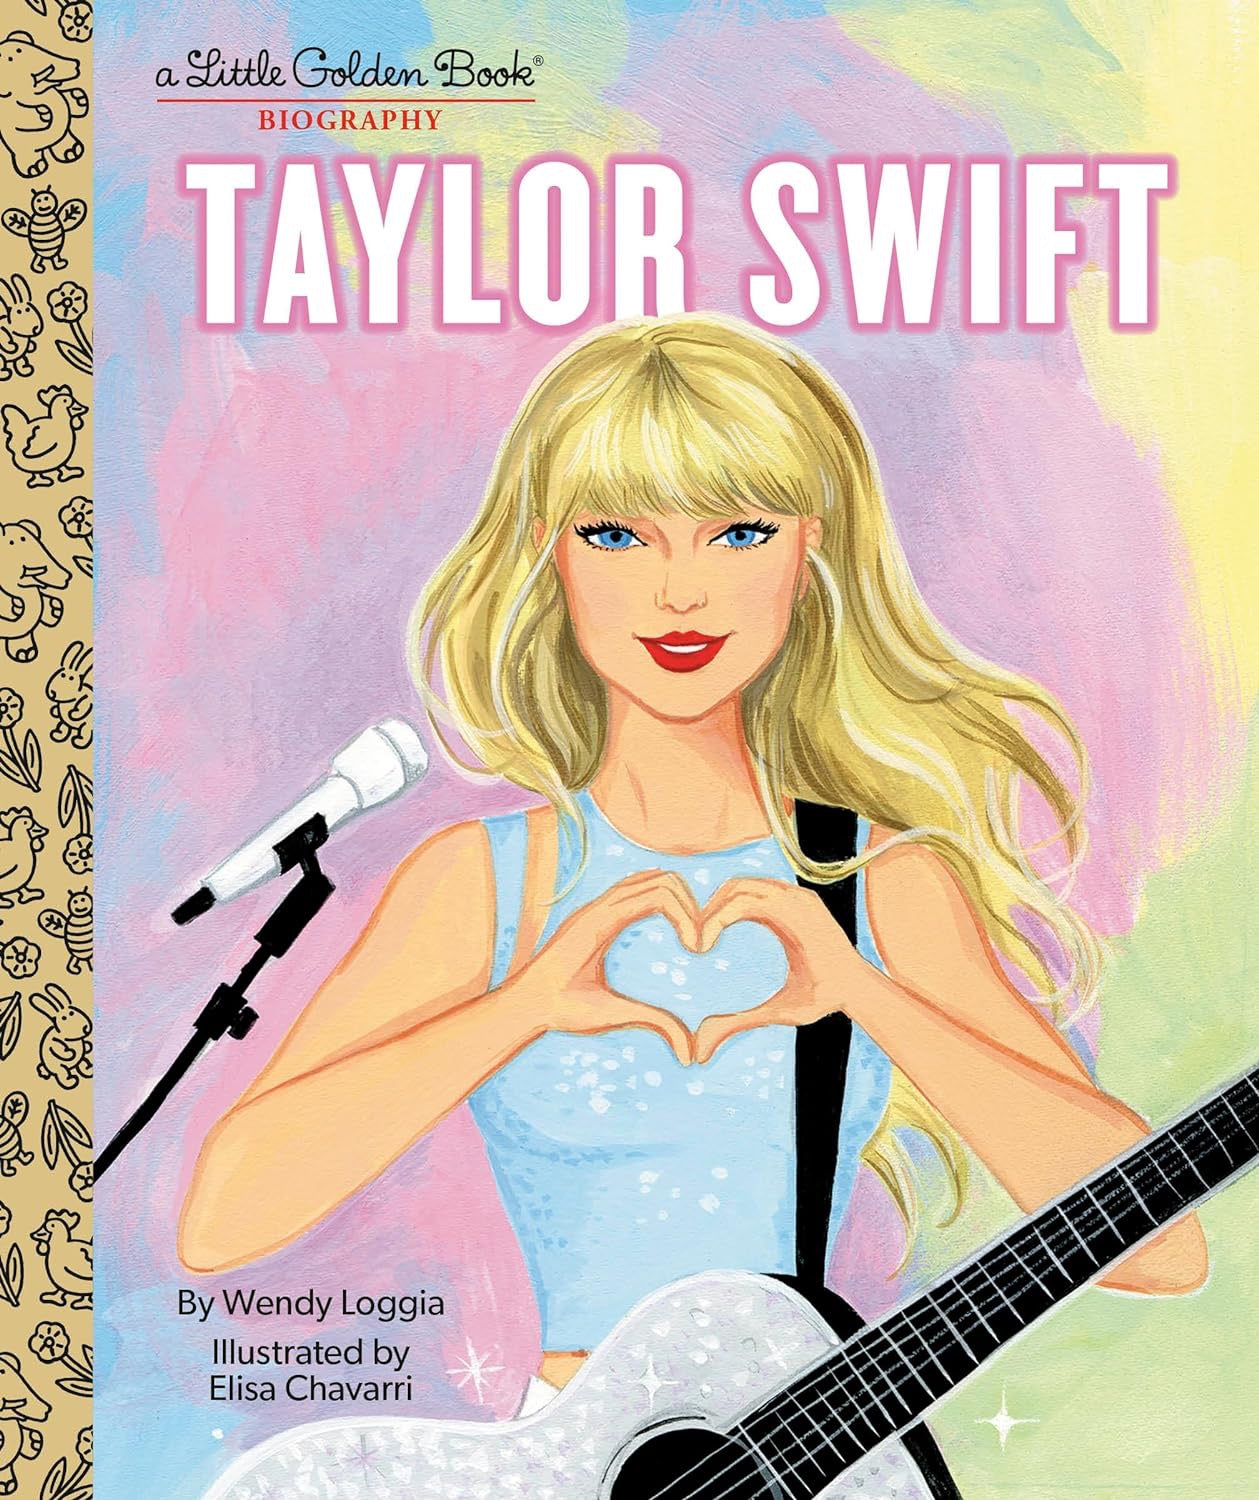 "Taylor Swift" Little Golden Book